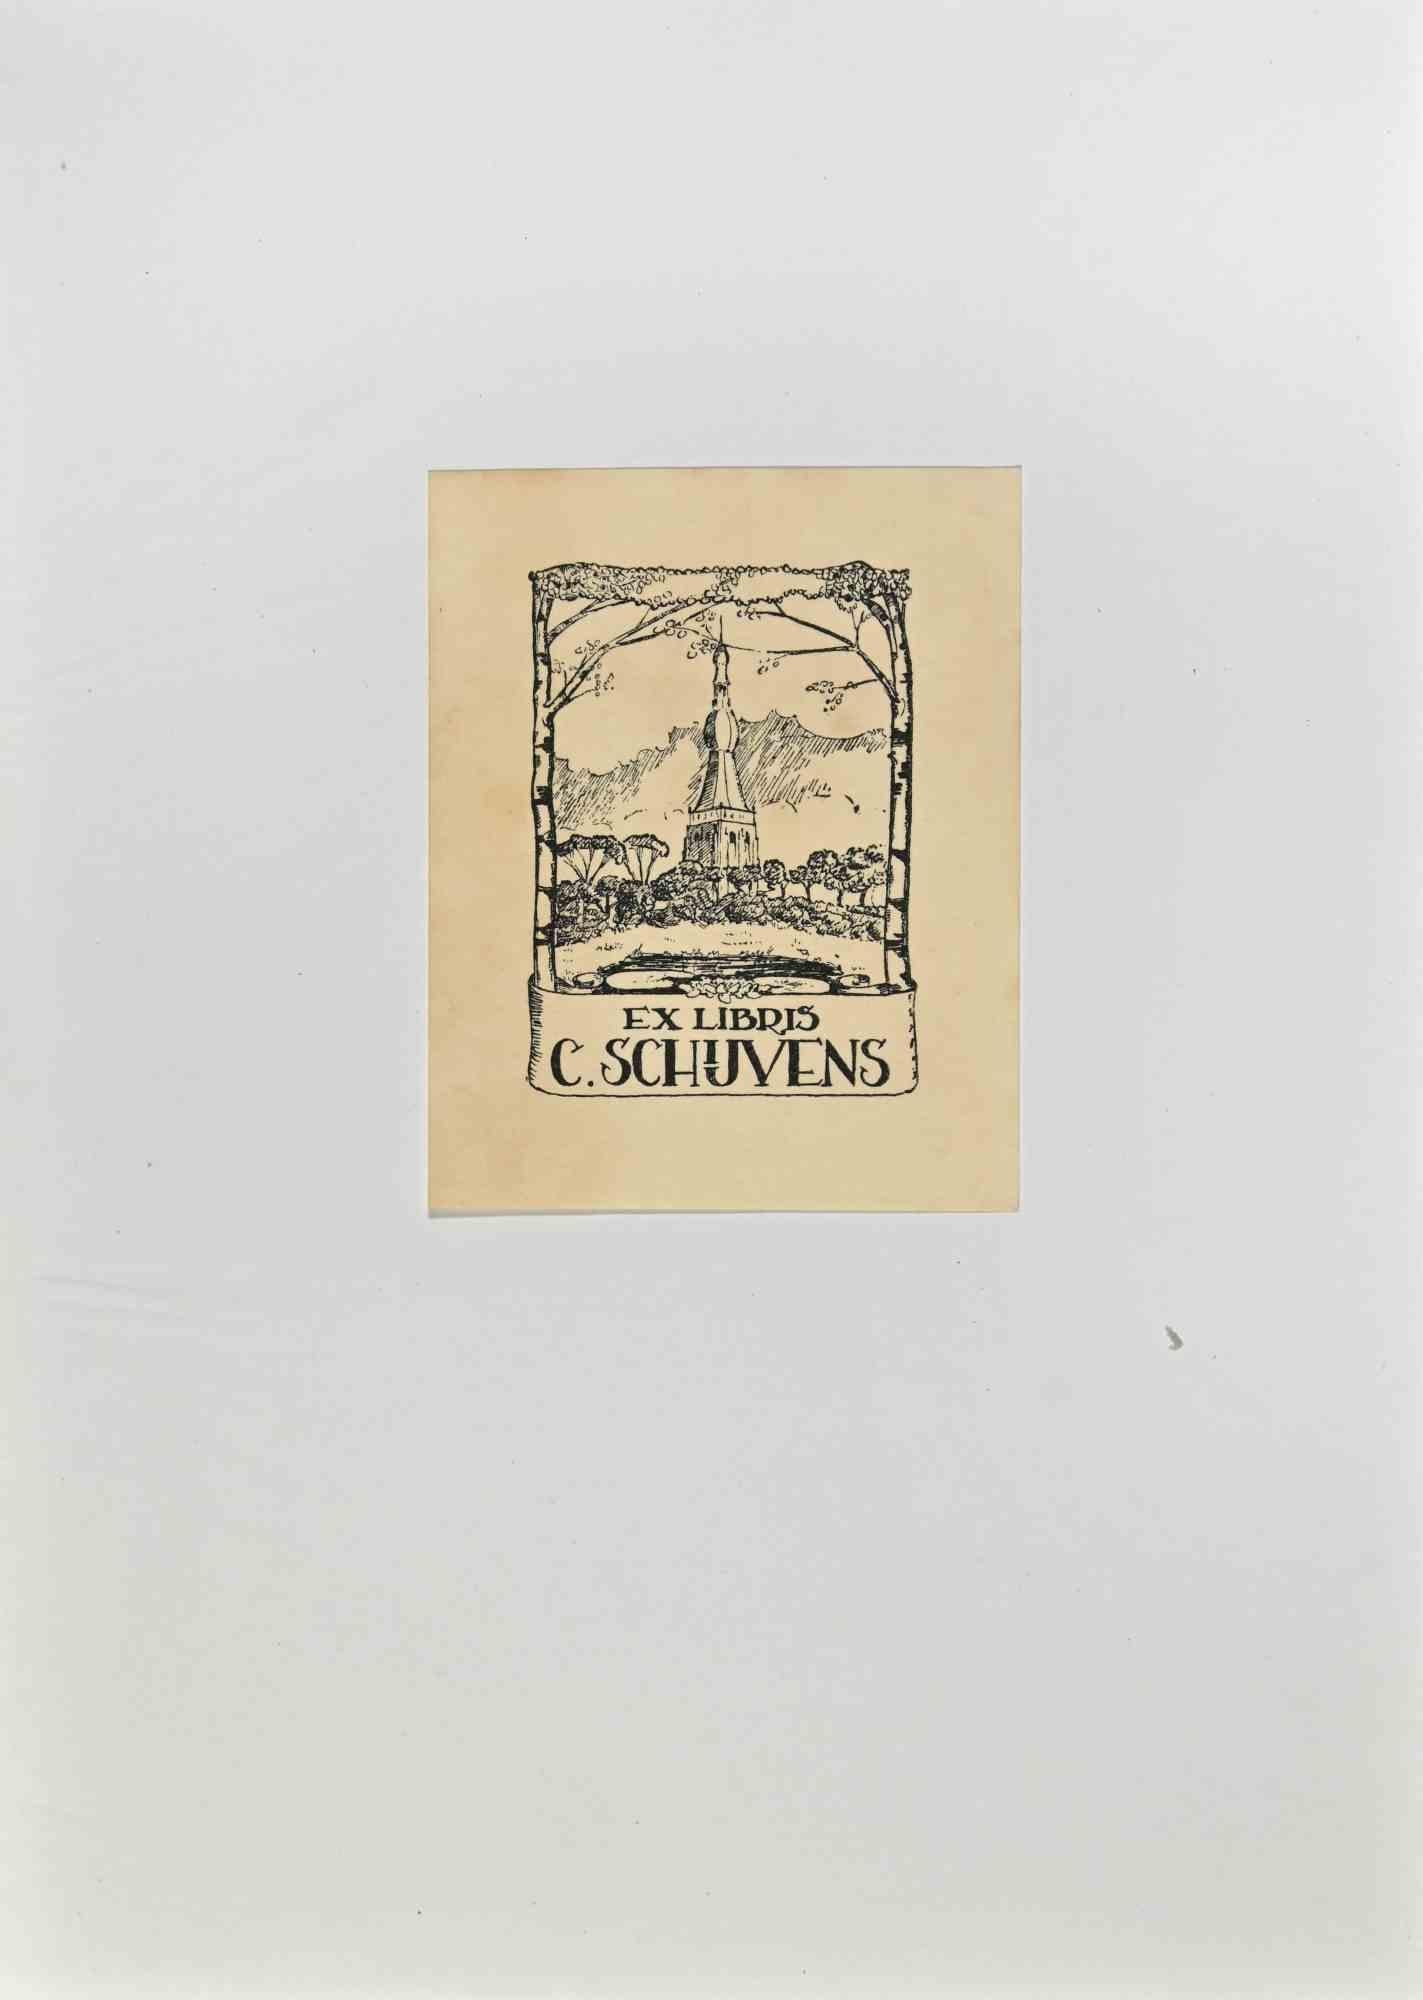  Ex Libris -C. Schuvens - Gravure sur bois - Milieu du XXe siècle